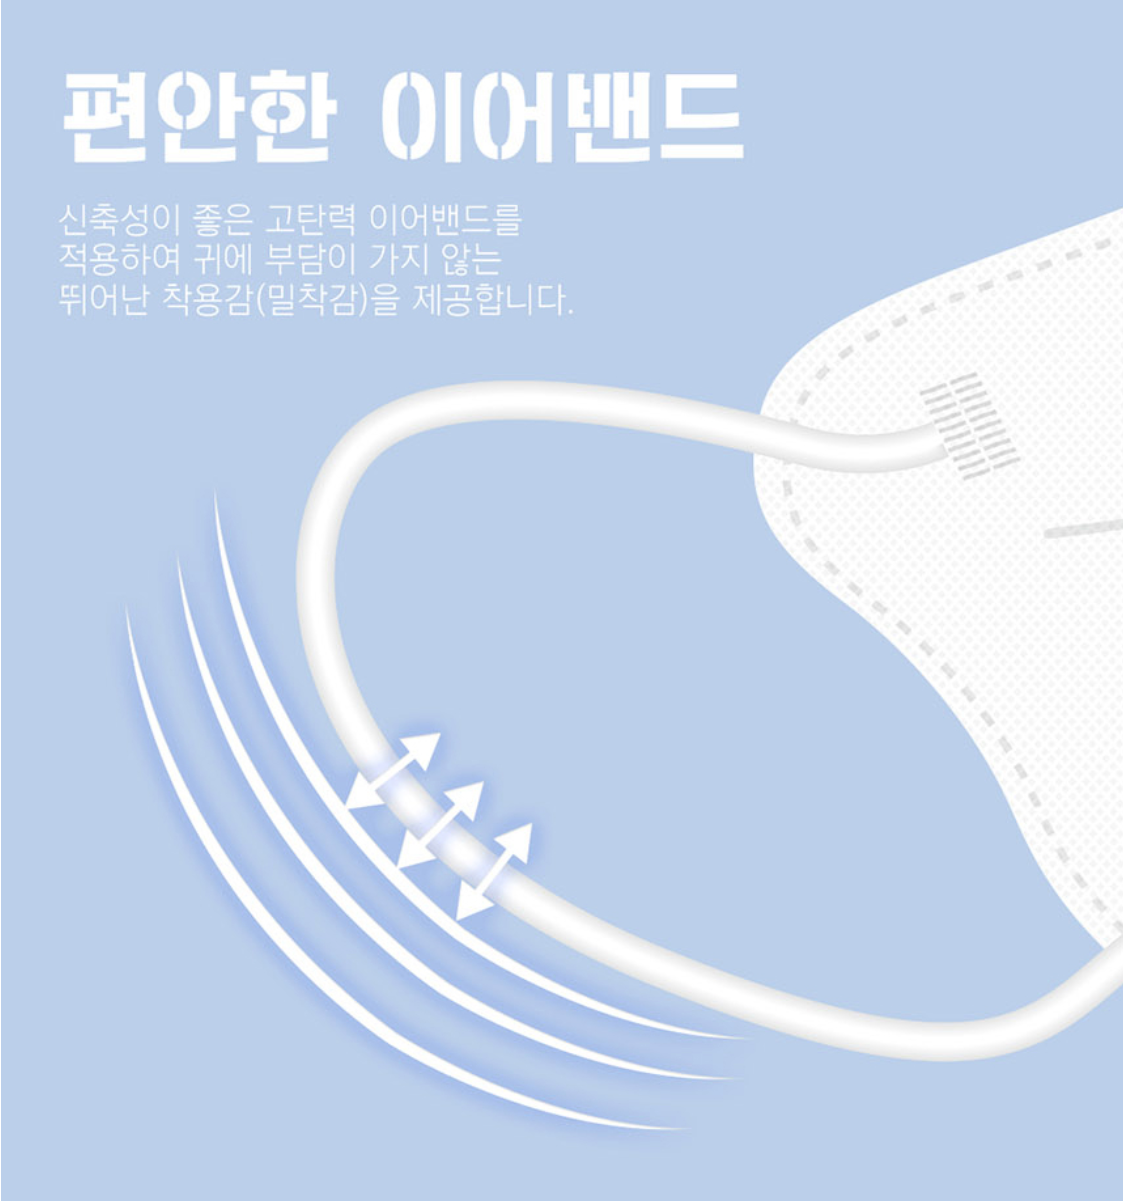 【現貨】Snoopy Comfort Fit 2D Masks for Adult (Size: L) 10pcs (zip bag)【Made in Korea】